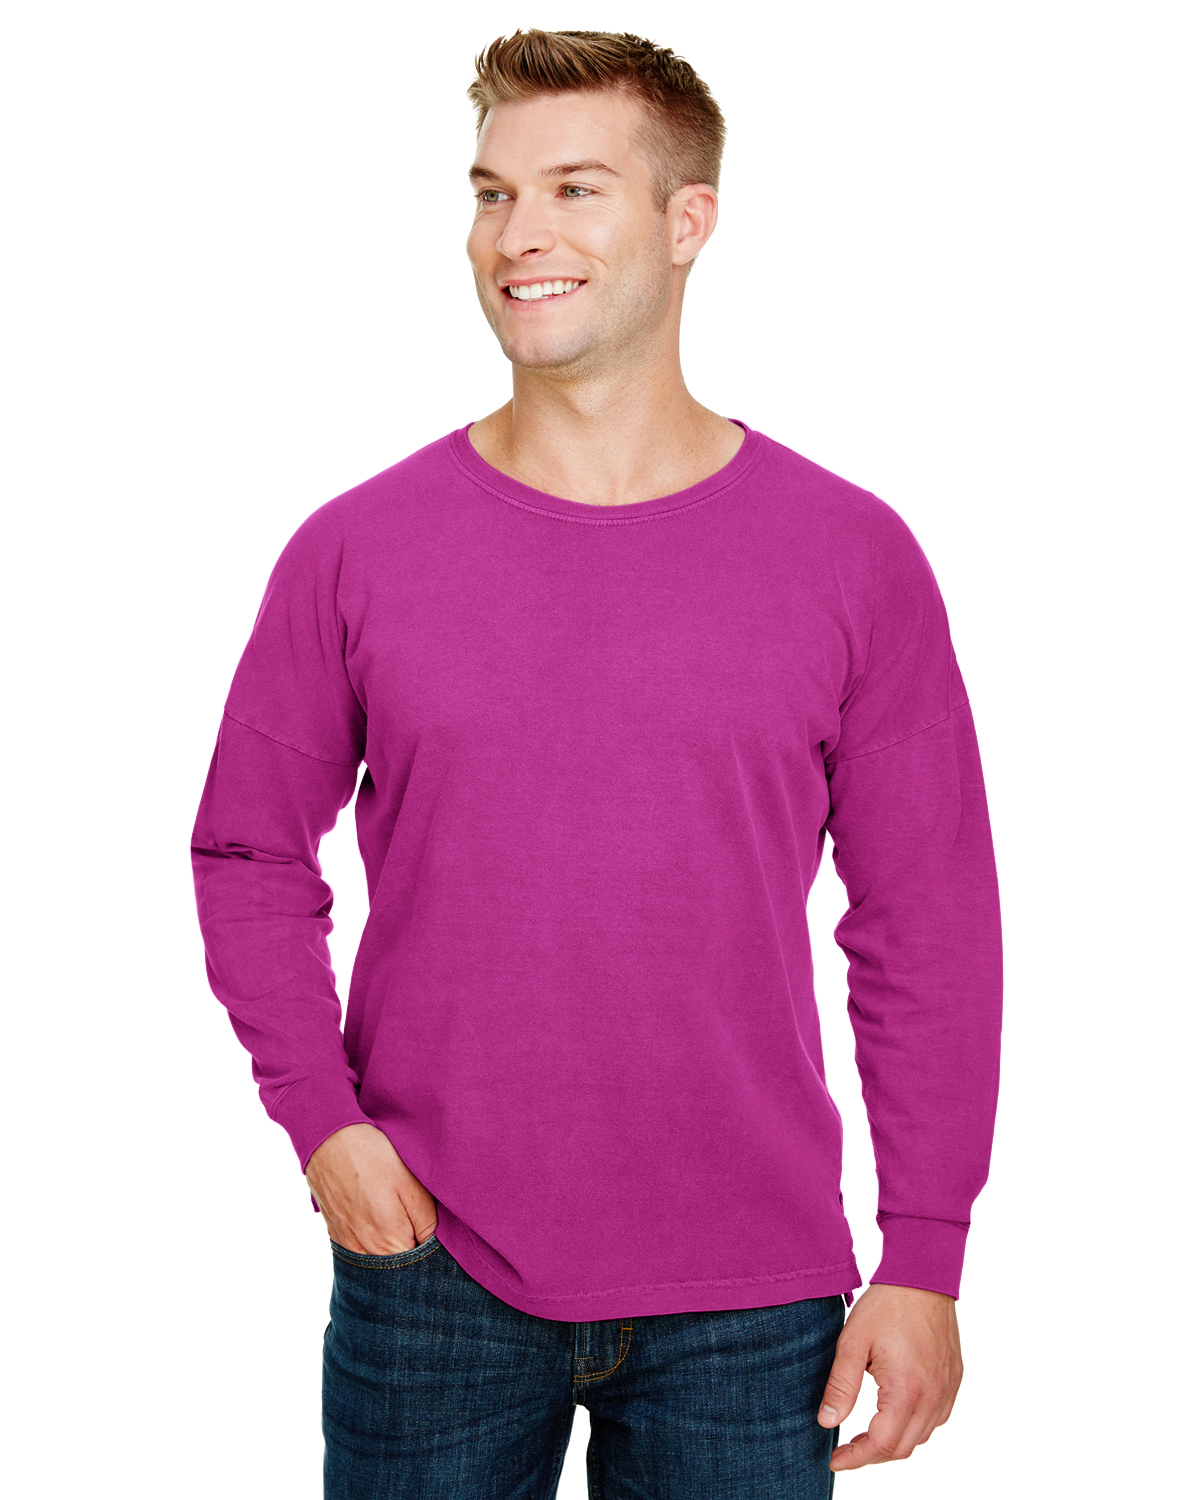 jiffy shirts comfort colors